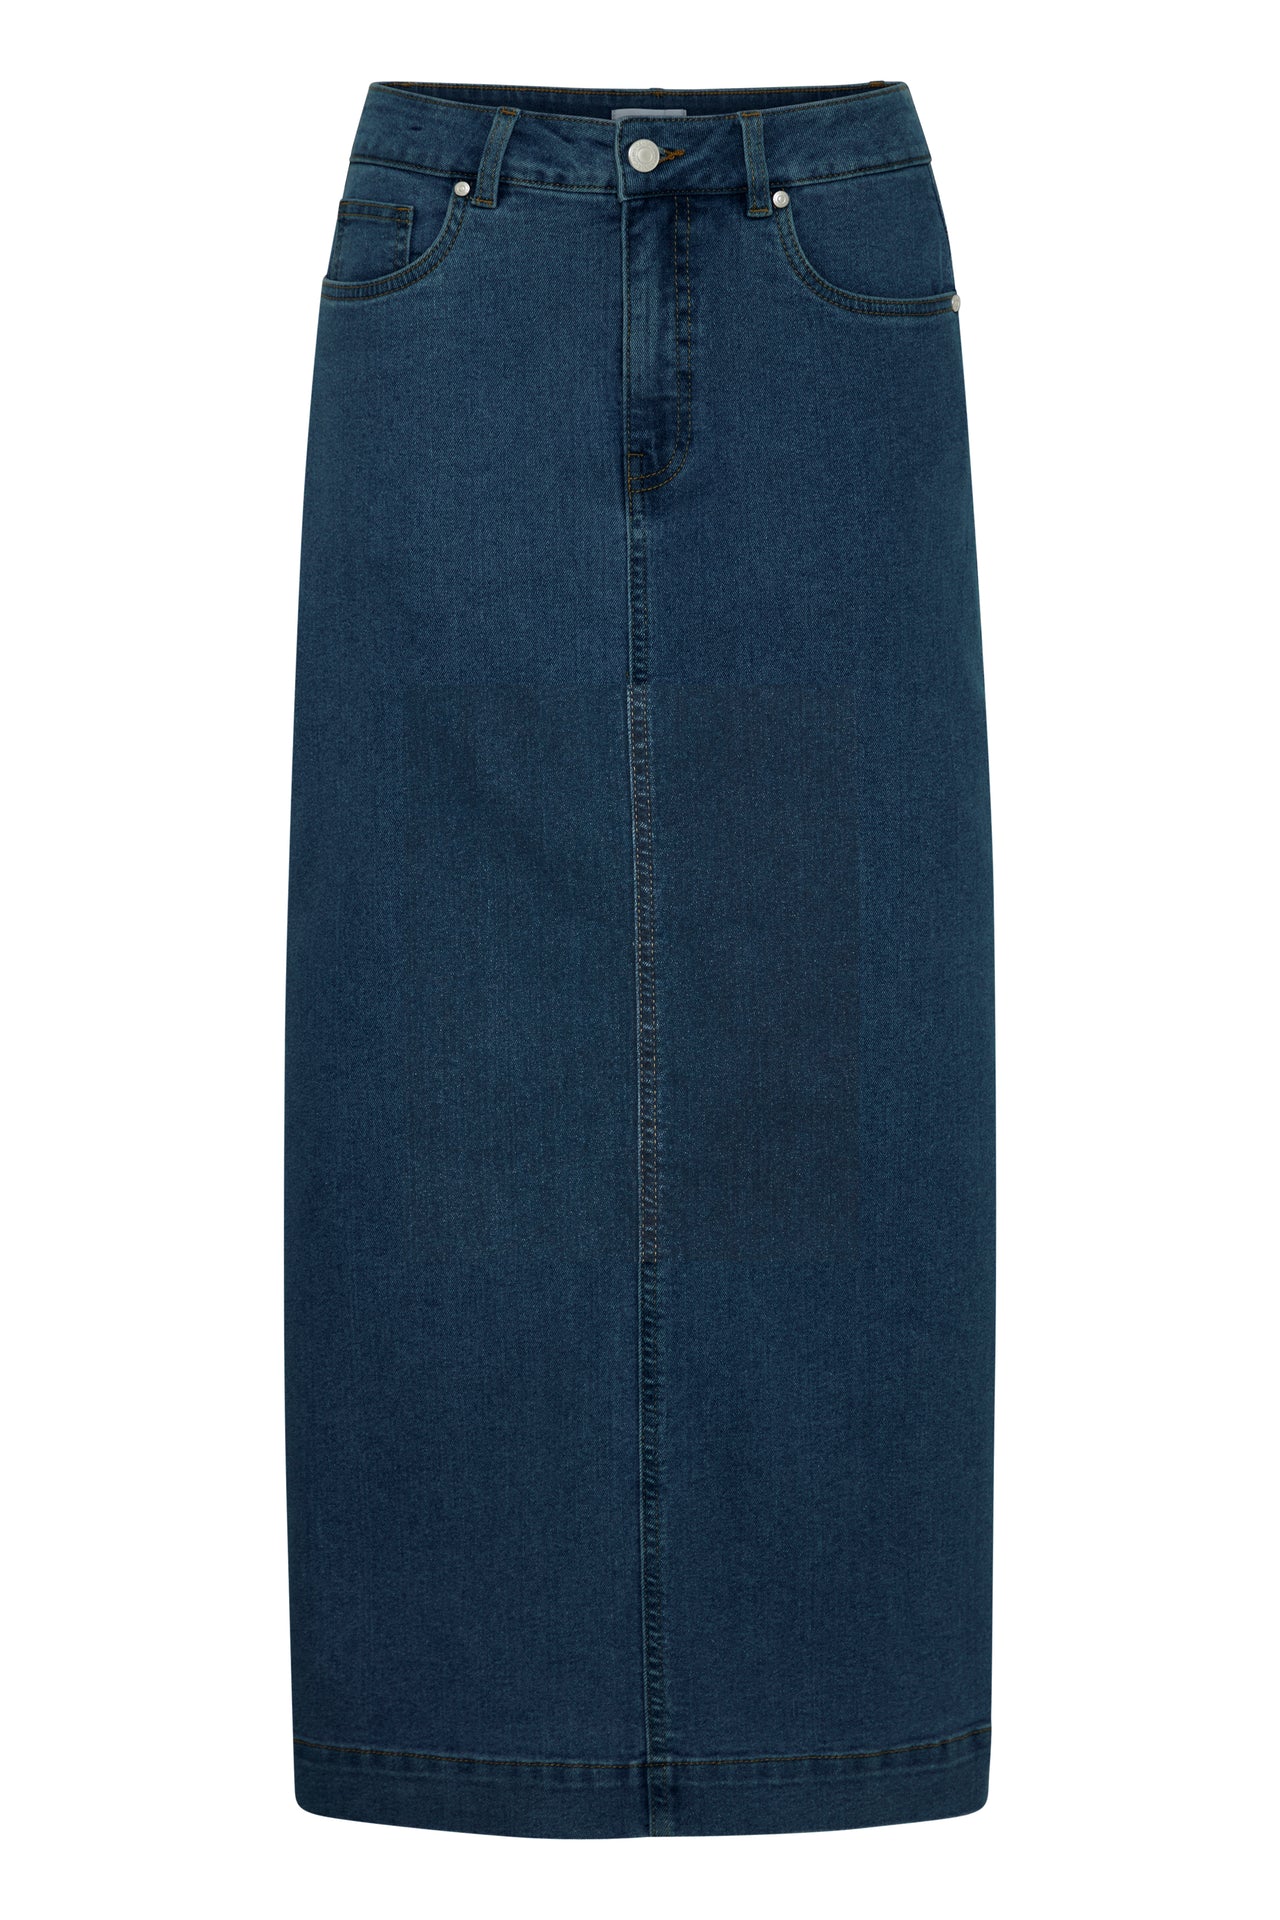 Fransa Denima Dark Blue Denim Skirt